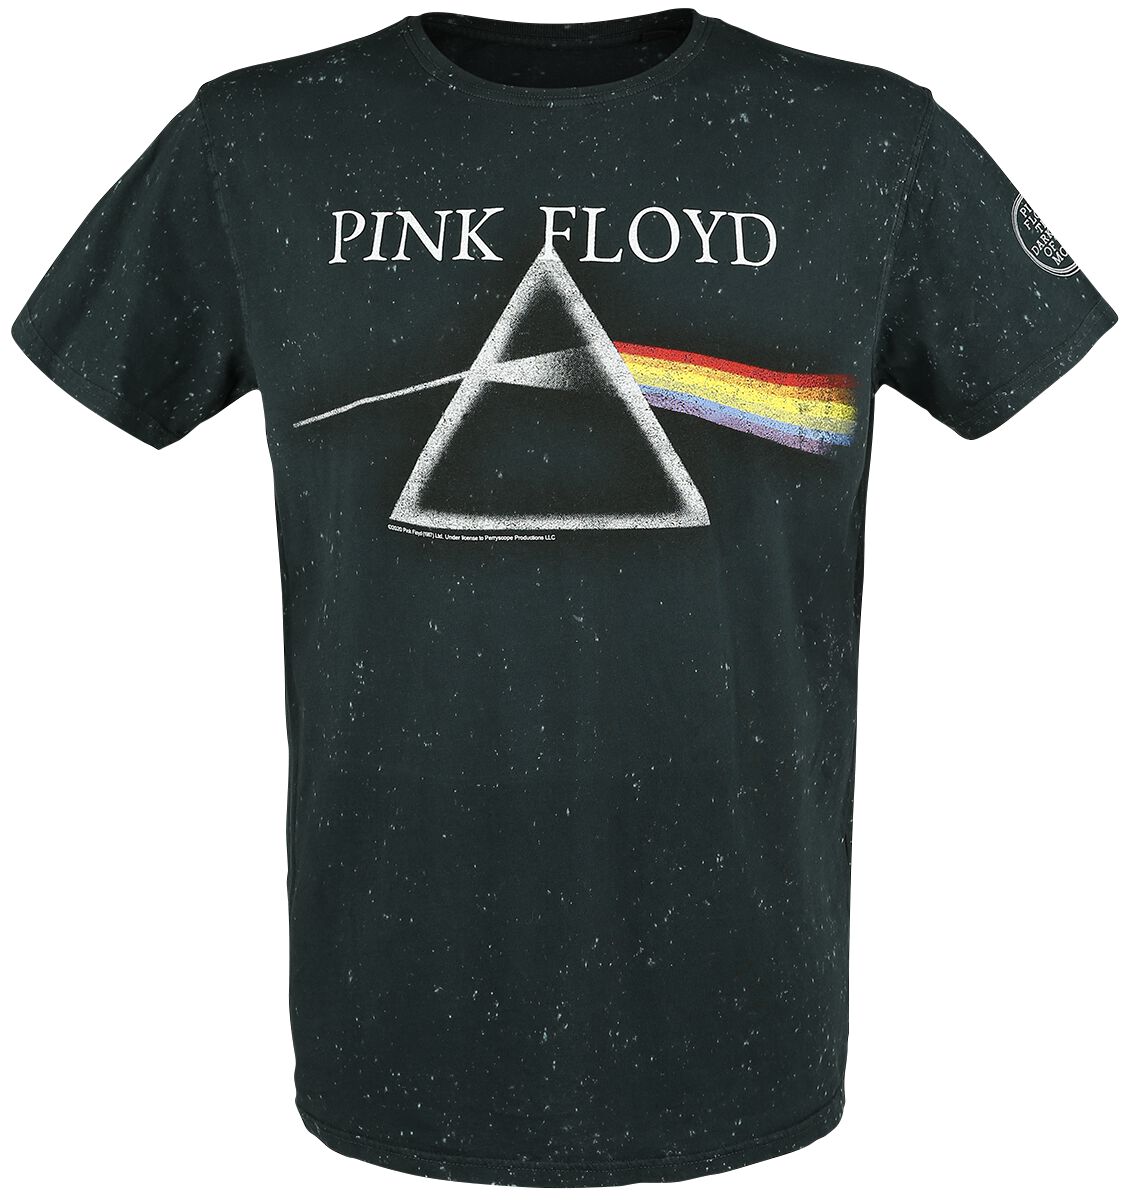 Pink Floyd T-Shirt - The Dark Side Of The Moon - S bis 3XL - für Männer - Größe L - anthrazit  - EMP exklusives Merchandise!